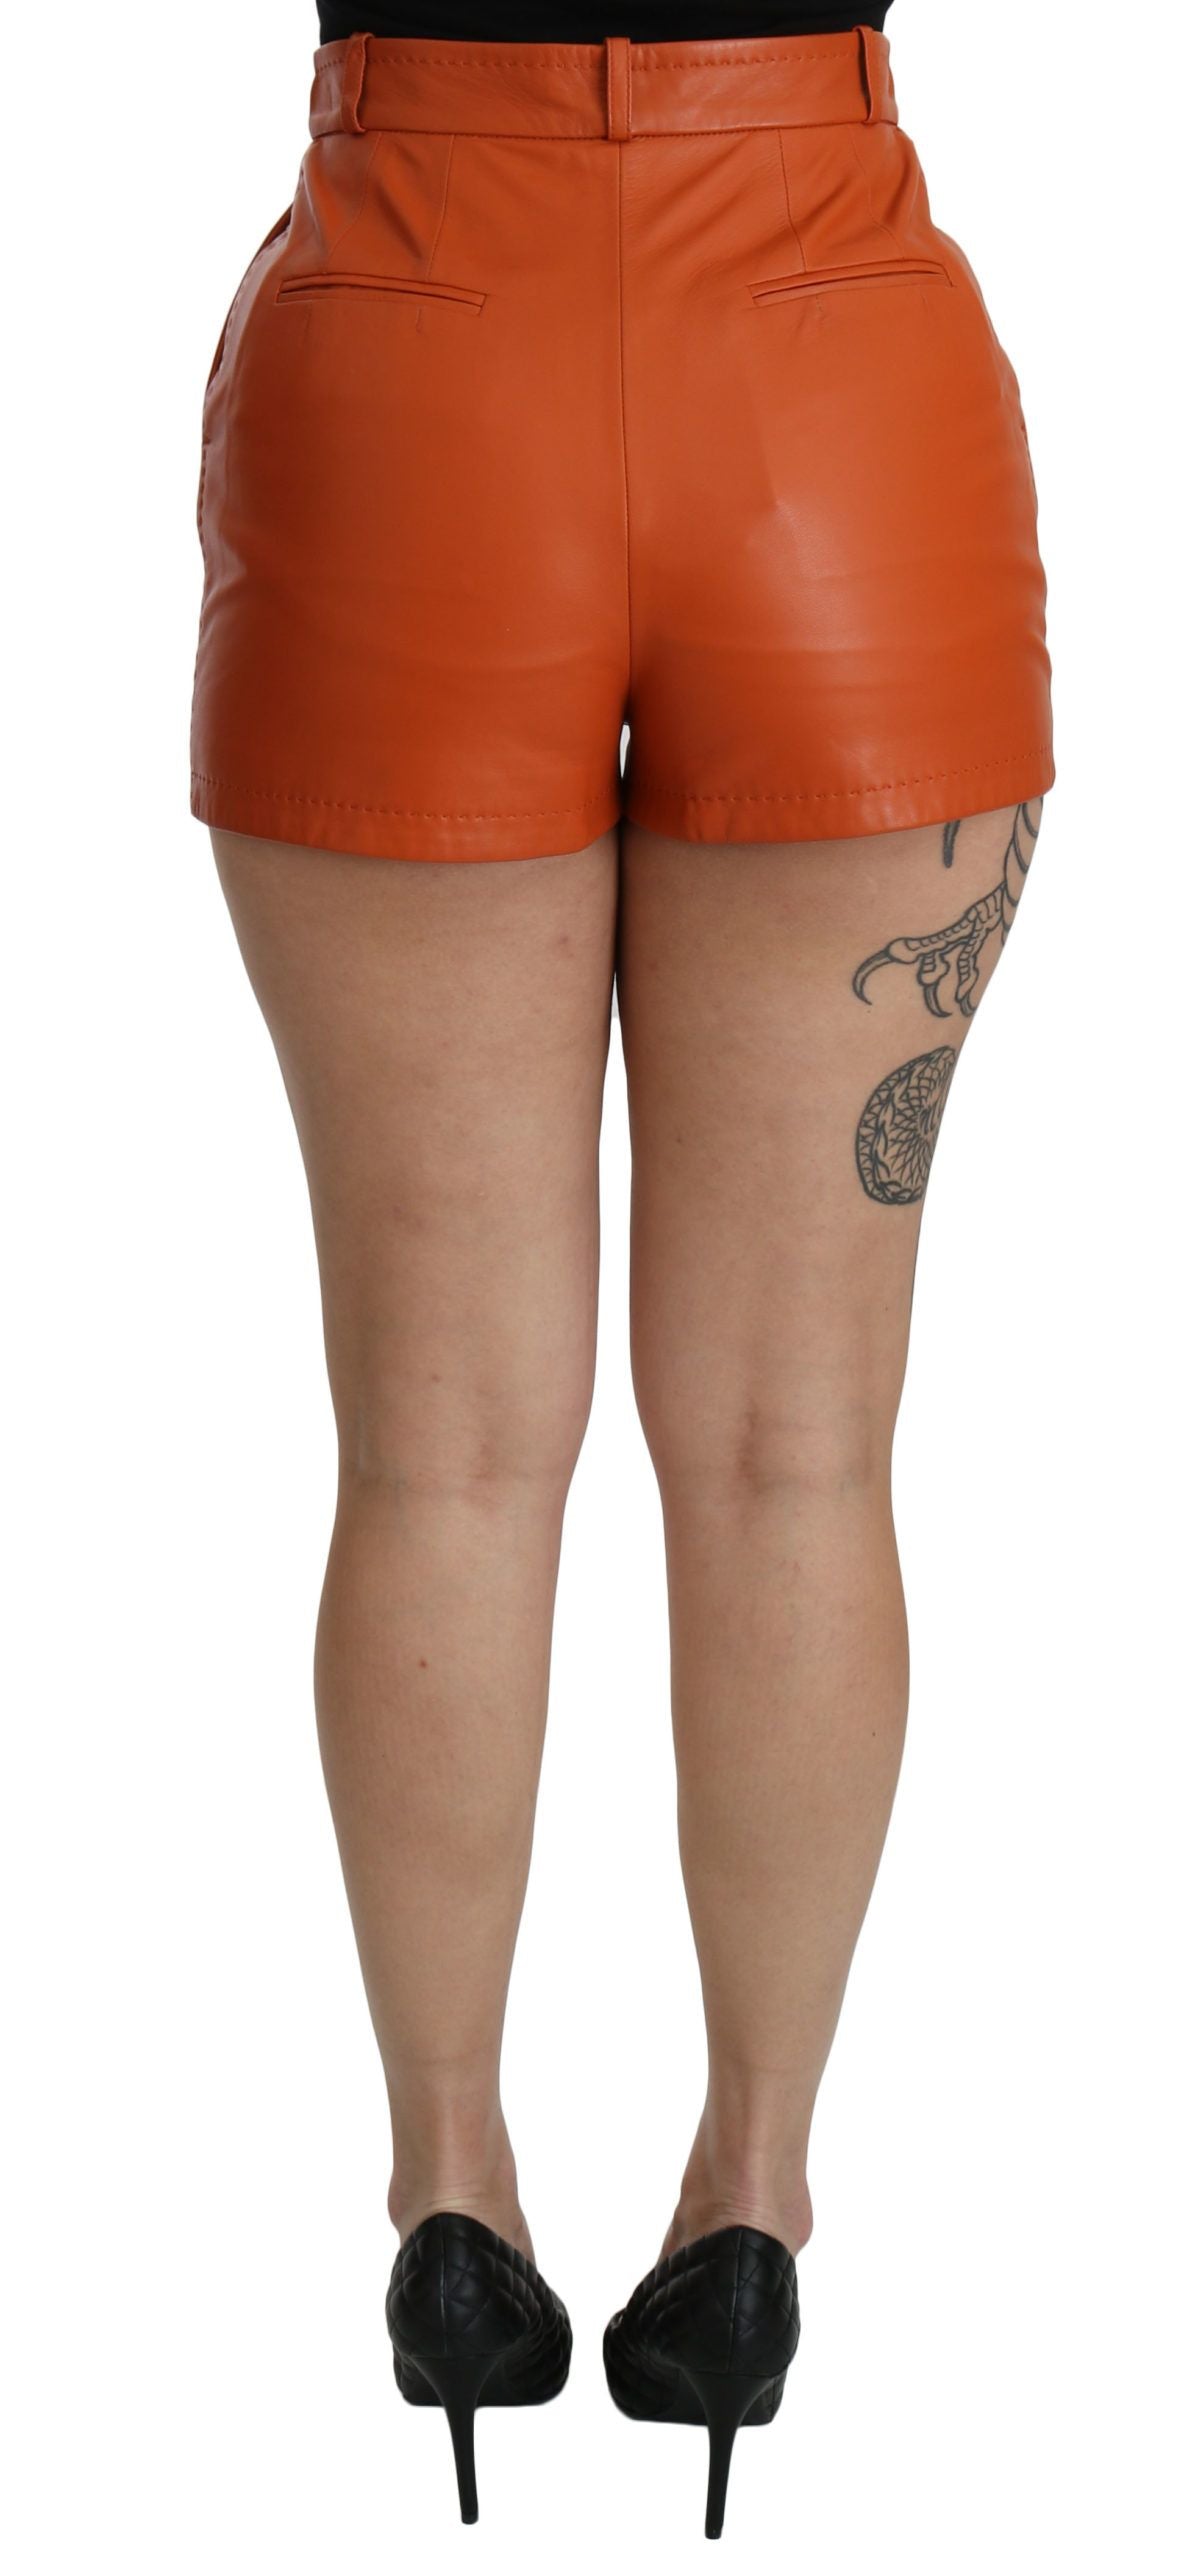 Dolce & Gabbana Orange Leather High Waist Hot Pants Shorts